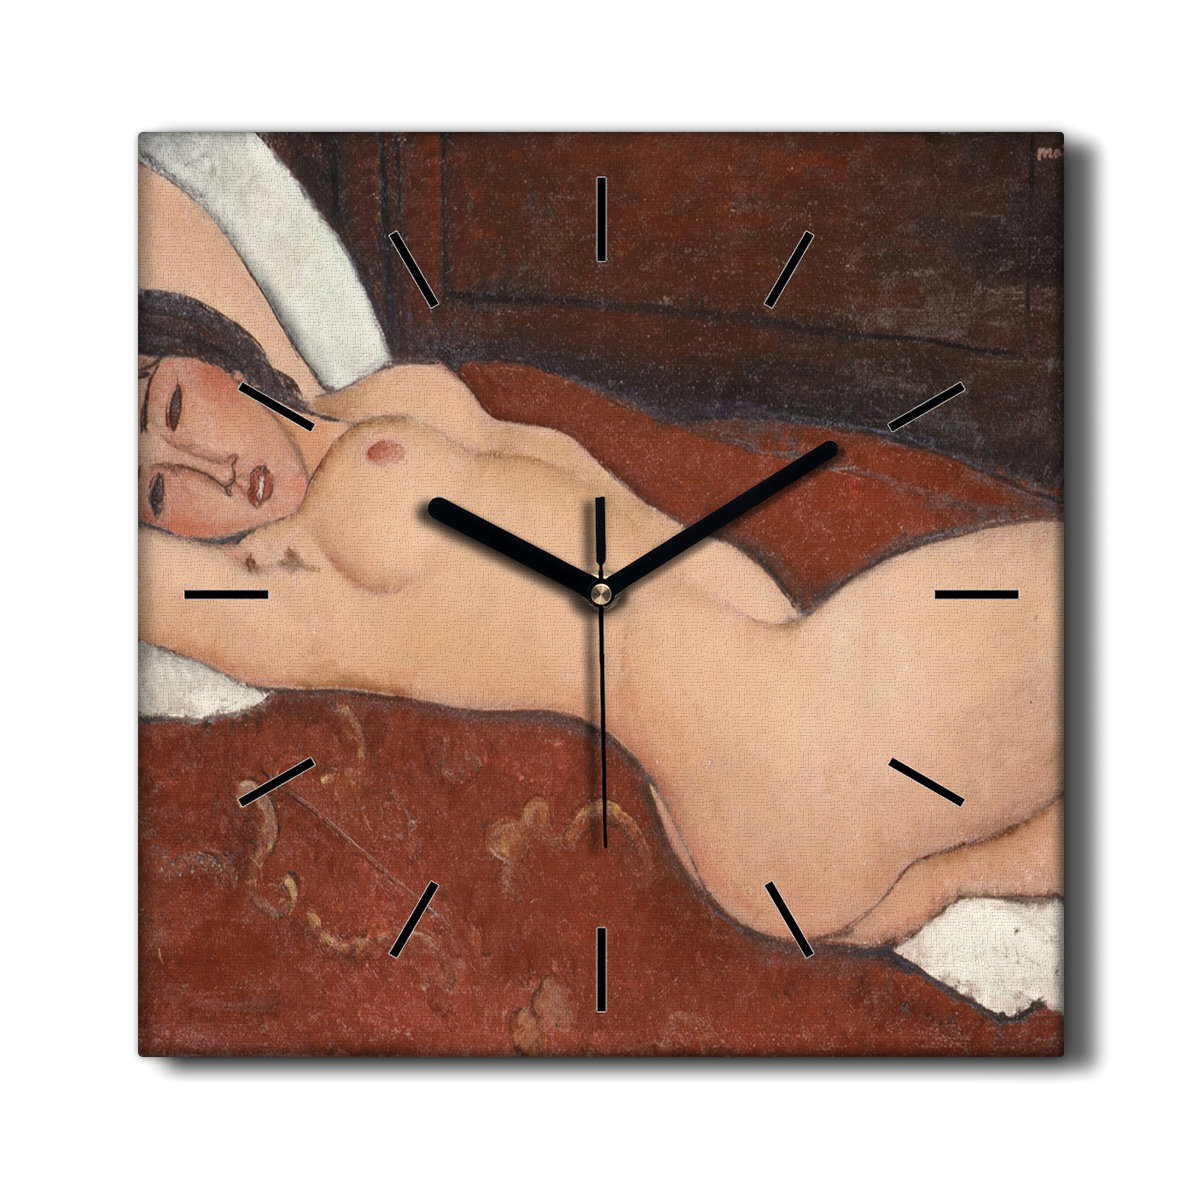 Zegar na płótnie Nagie kobiety anatomia 30x30 cm, Coloray